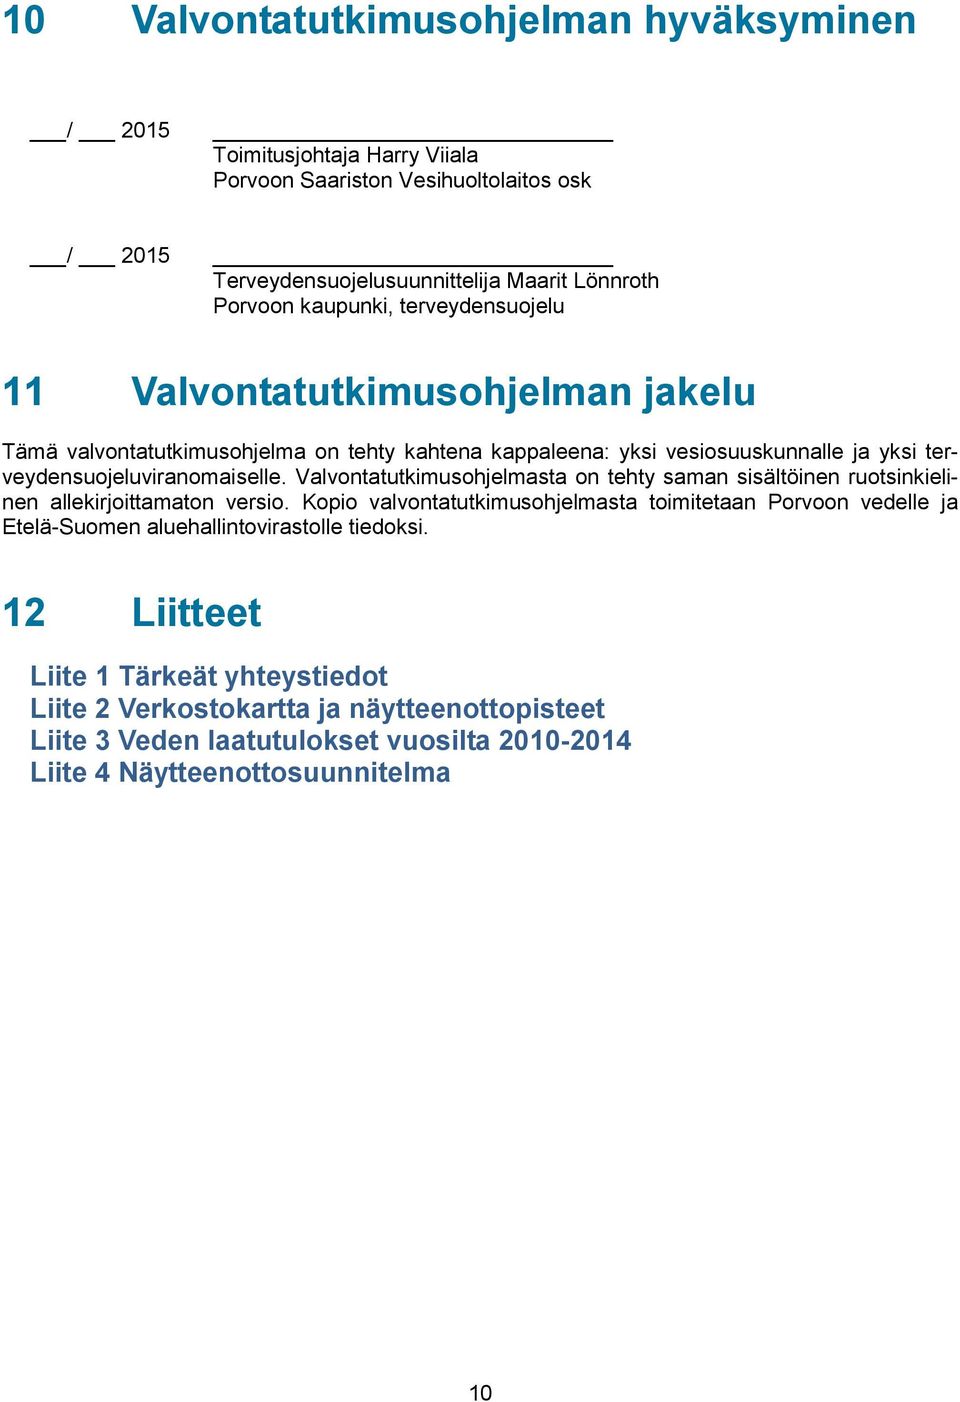 Valvontatutkimusohjelmasta on tehty saman sisältöinen ruotsinkielinen allekirjoittamaton versio.